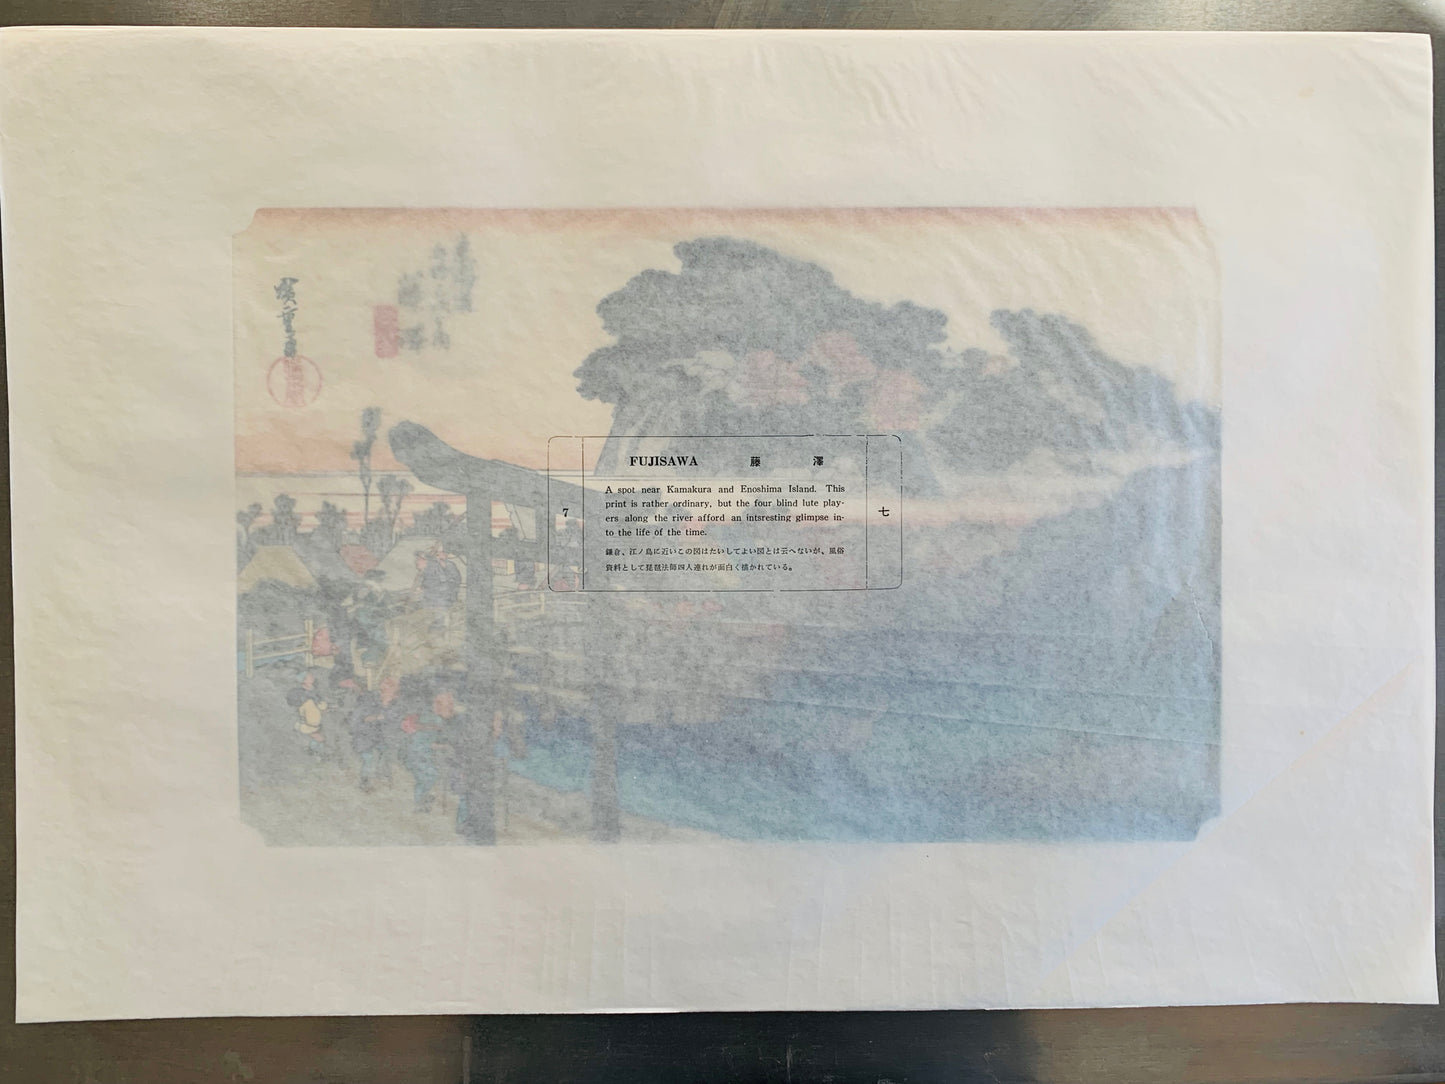 estampe japonaise de Hiroshige, papier cristal